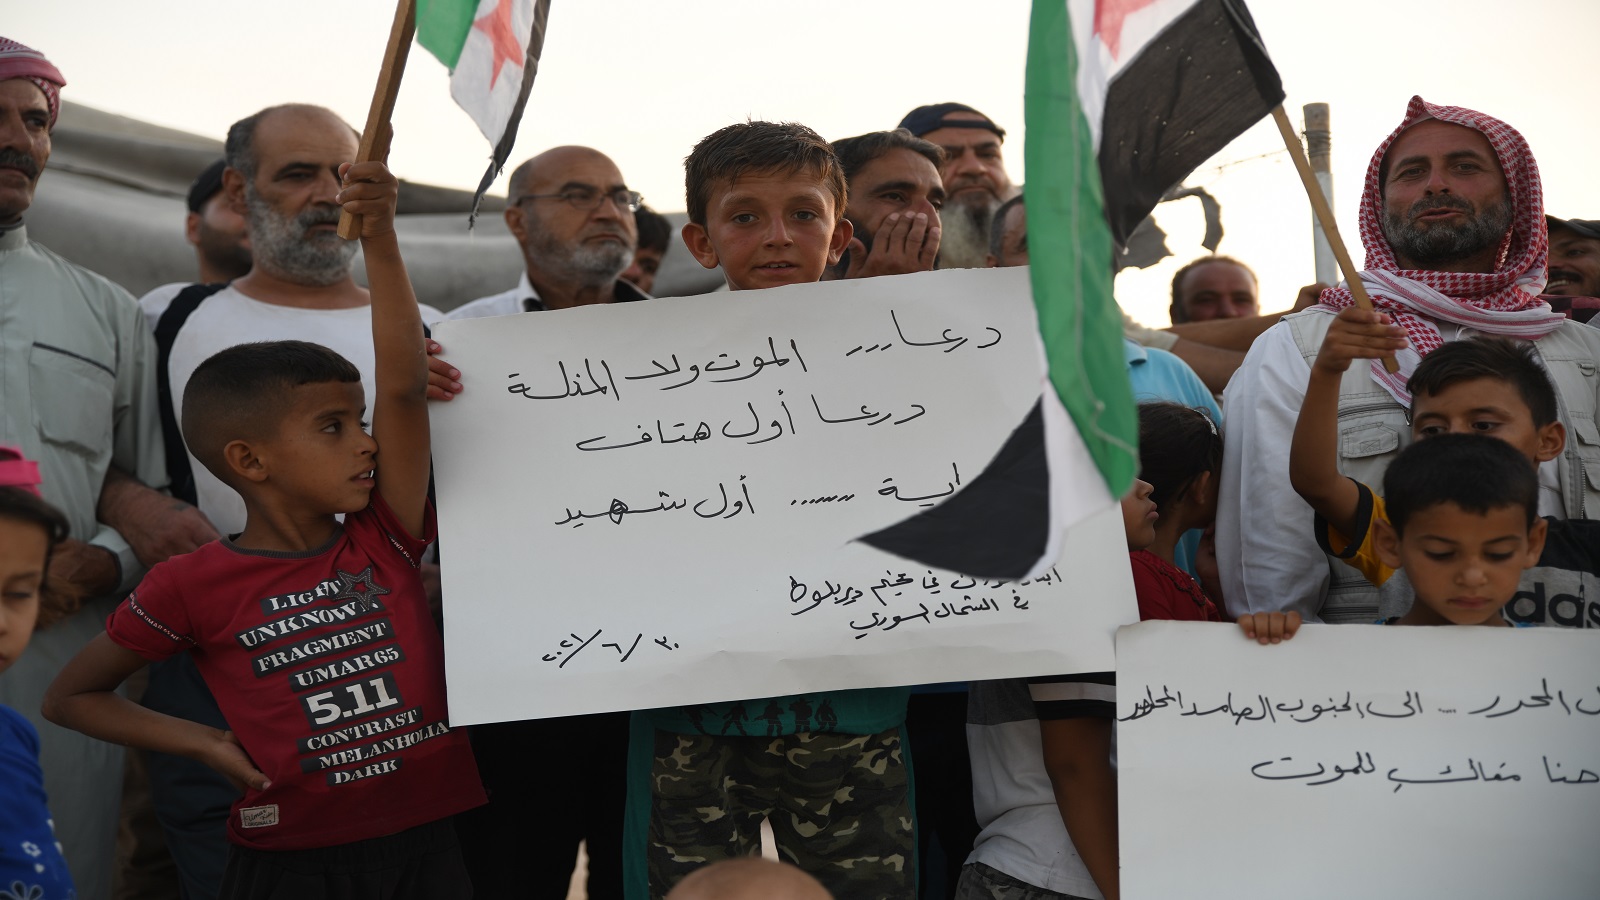 درعا:النظام يهدد بتدمير المسجد العمري والمعارضة لن تتراجع